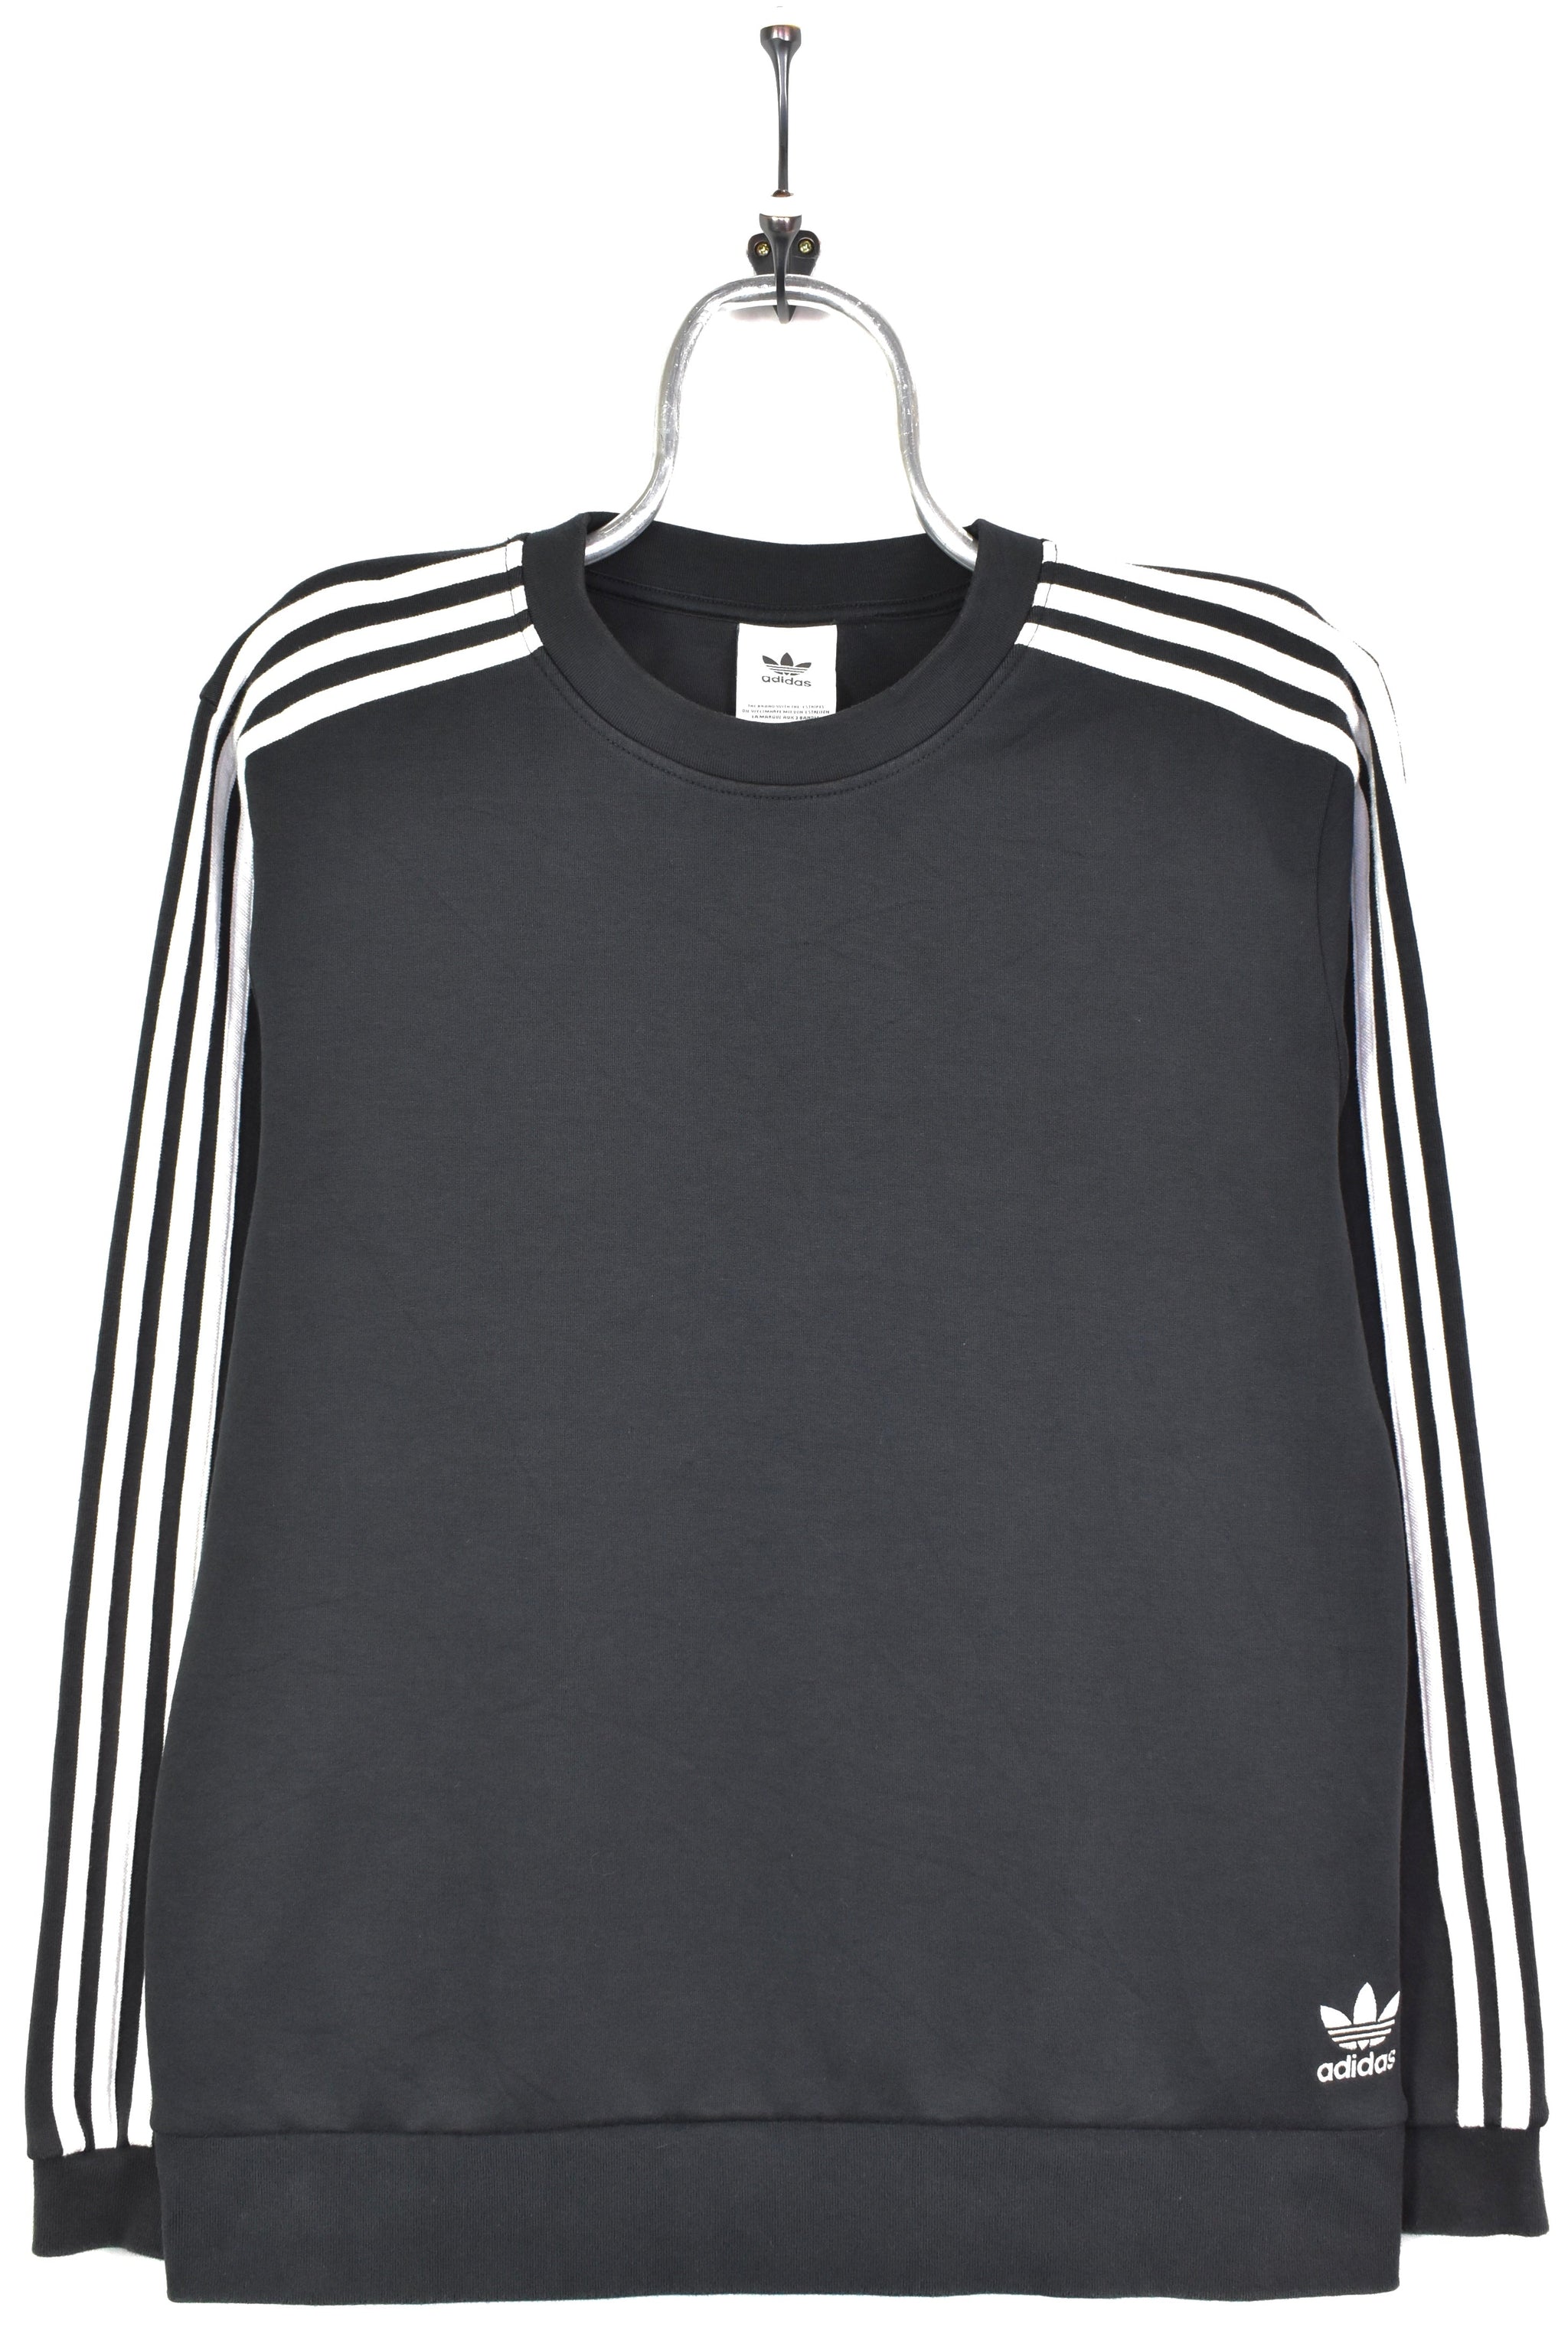 Vintage Adidas sweatshirt, black embroidered crewneck - AU Large